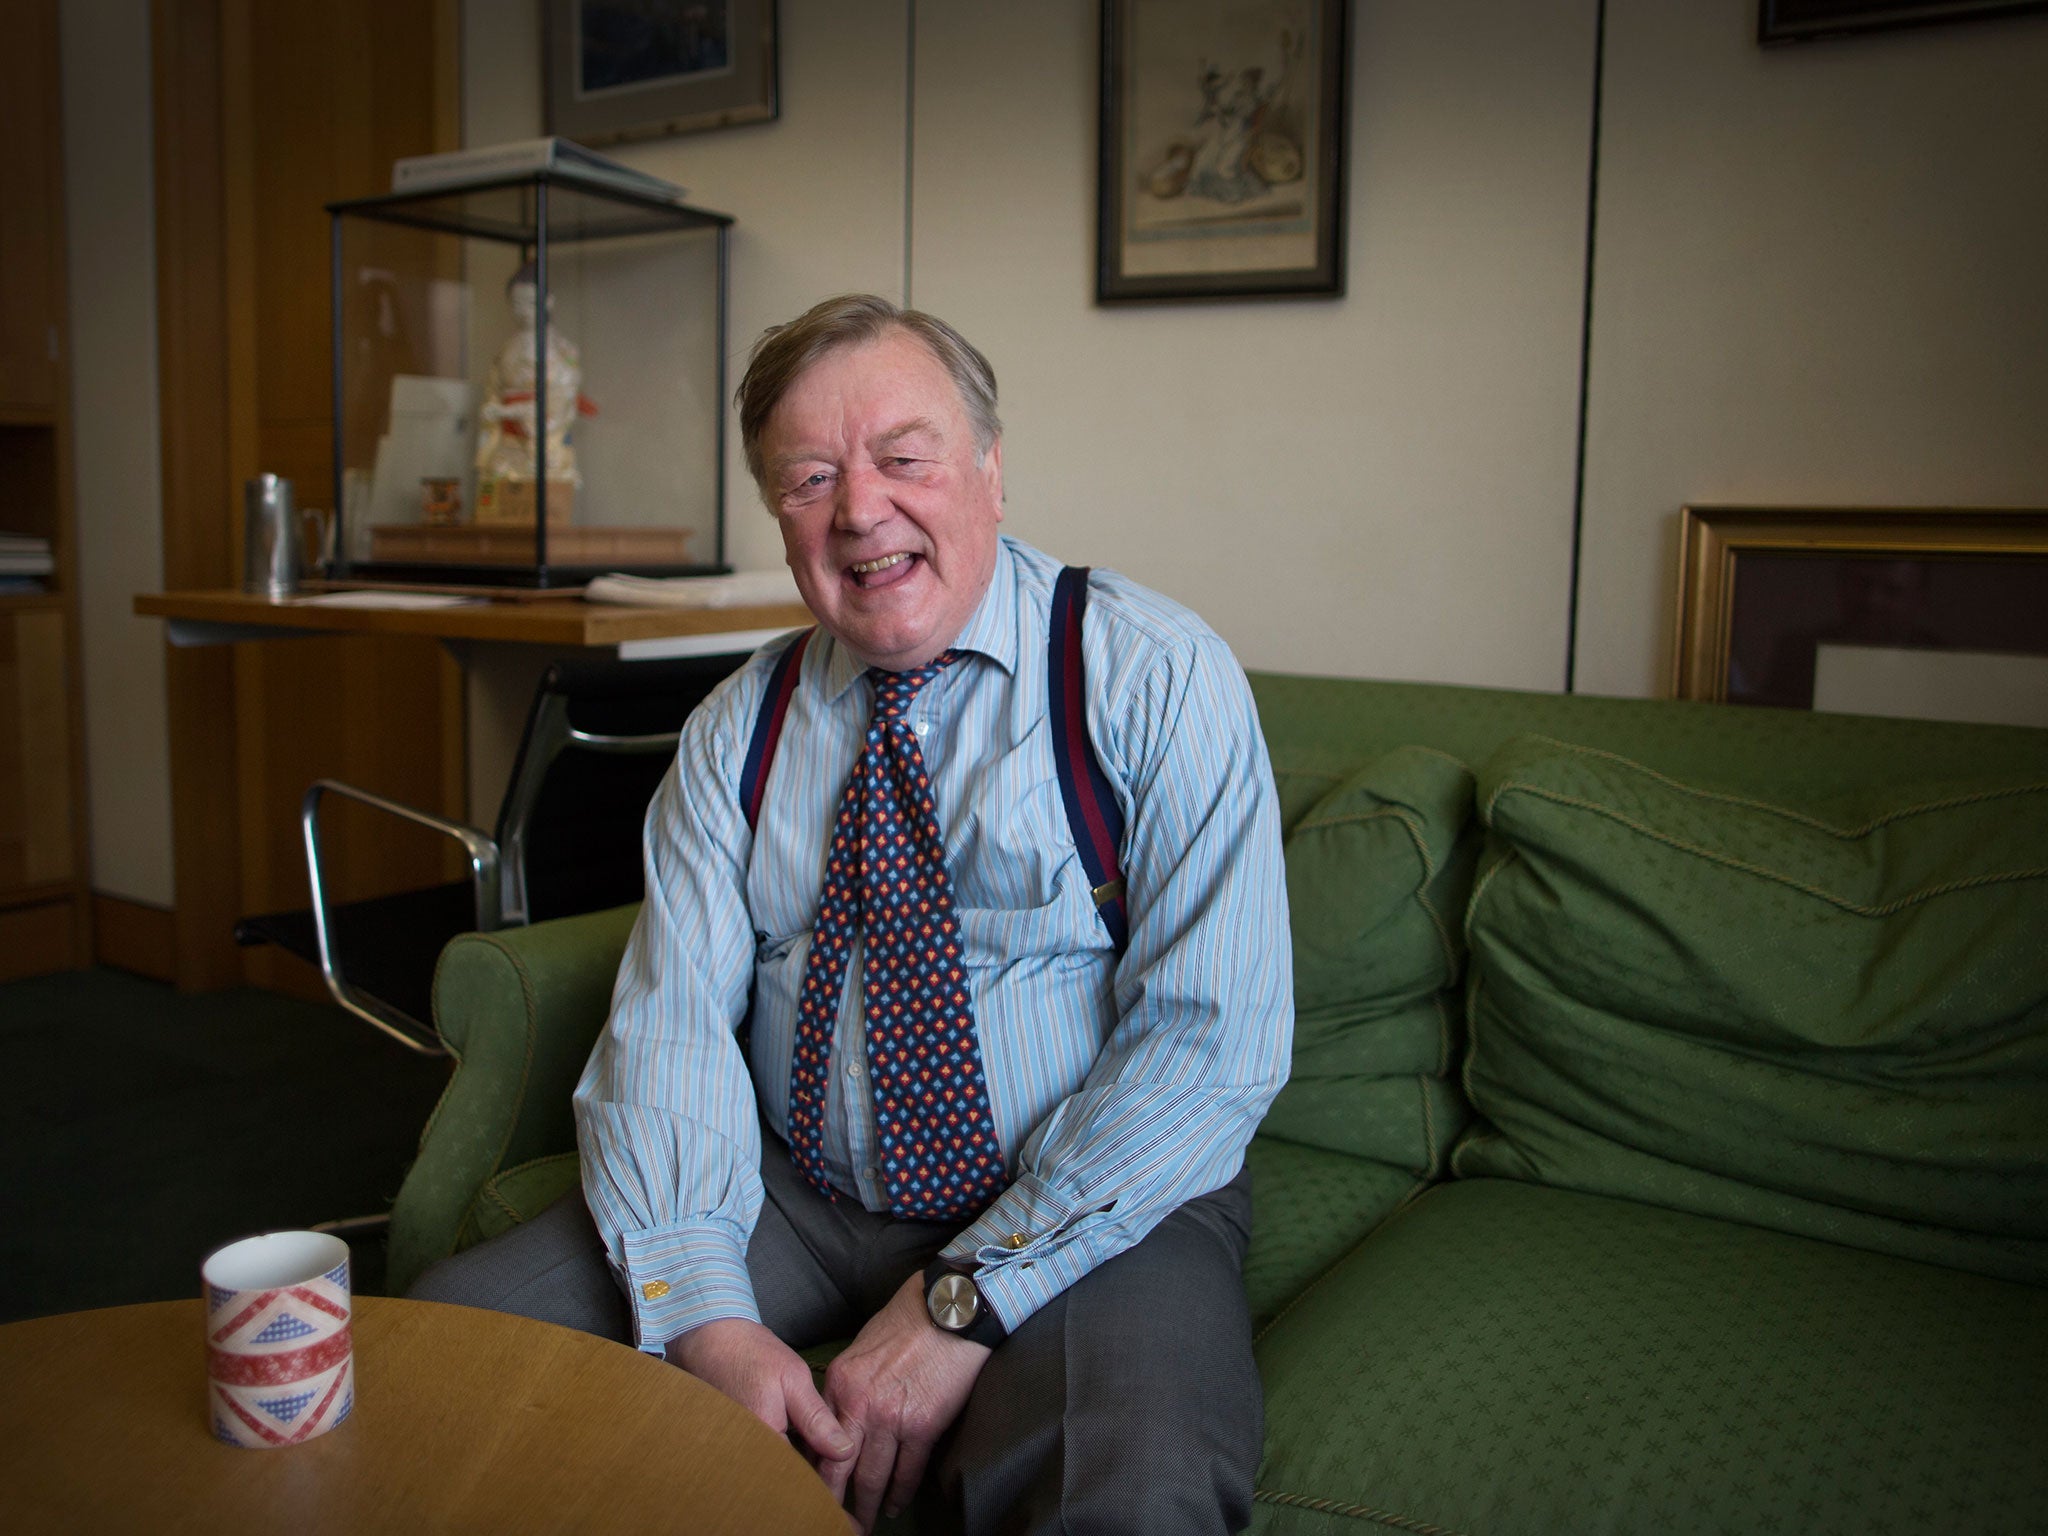 Ken Clarke MP in his office